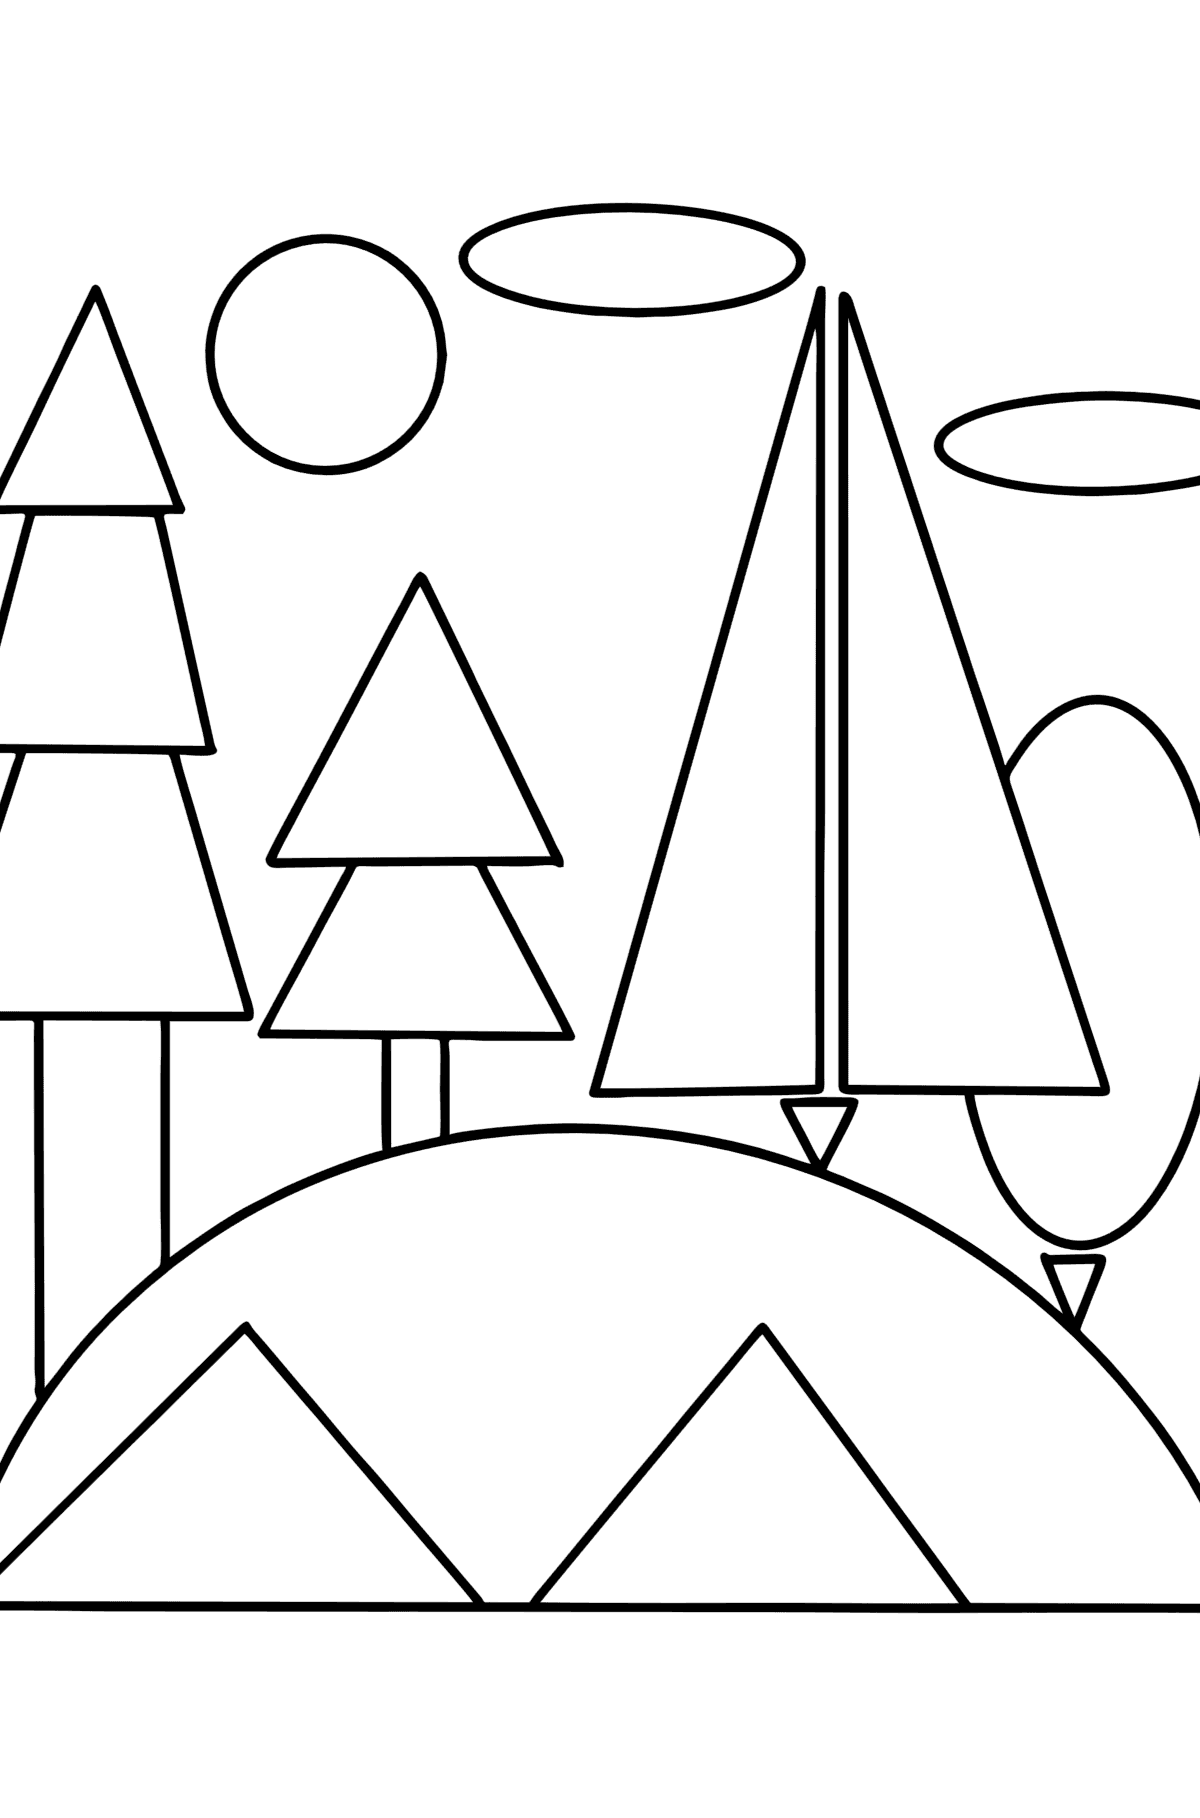 Ausmalbild Wald auf einem Hügel mit geometrischen Formen - Malvorlagen für Kinder